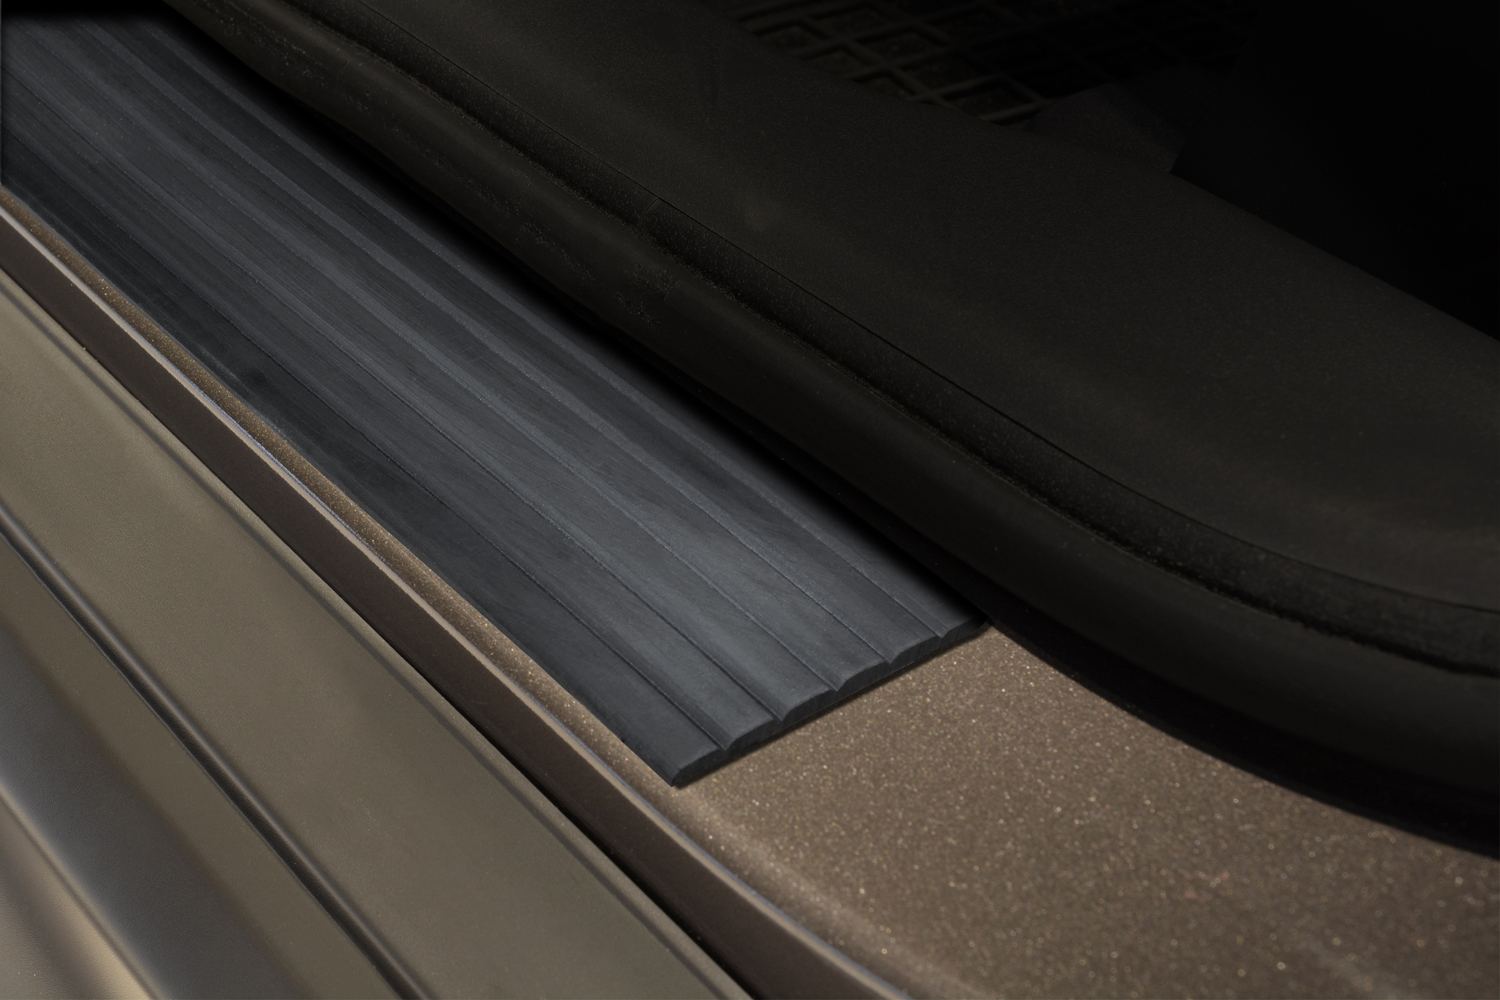 Как называется накладка на дверь автомобиля. Накладки на пороги Audi универсальные резиновые ширина 60 мм. Avisa накладки. Накладки на пороги Audi универсальные резиновые ширина 60 мм БМВ. Накладки на пороги универсальные АБС 210см.